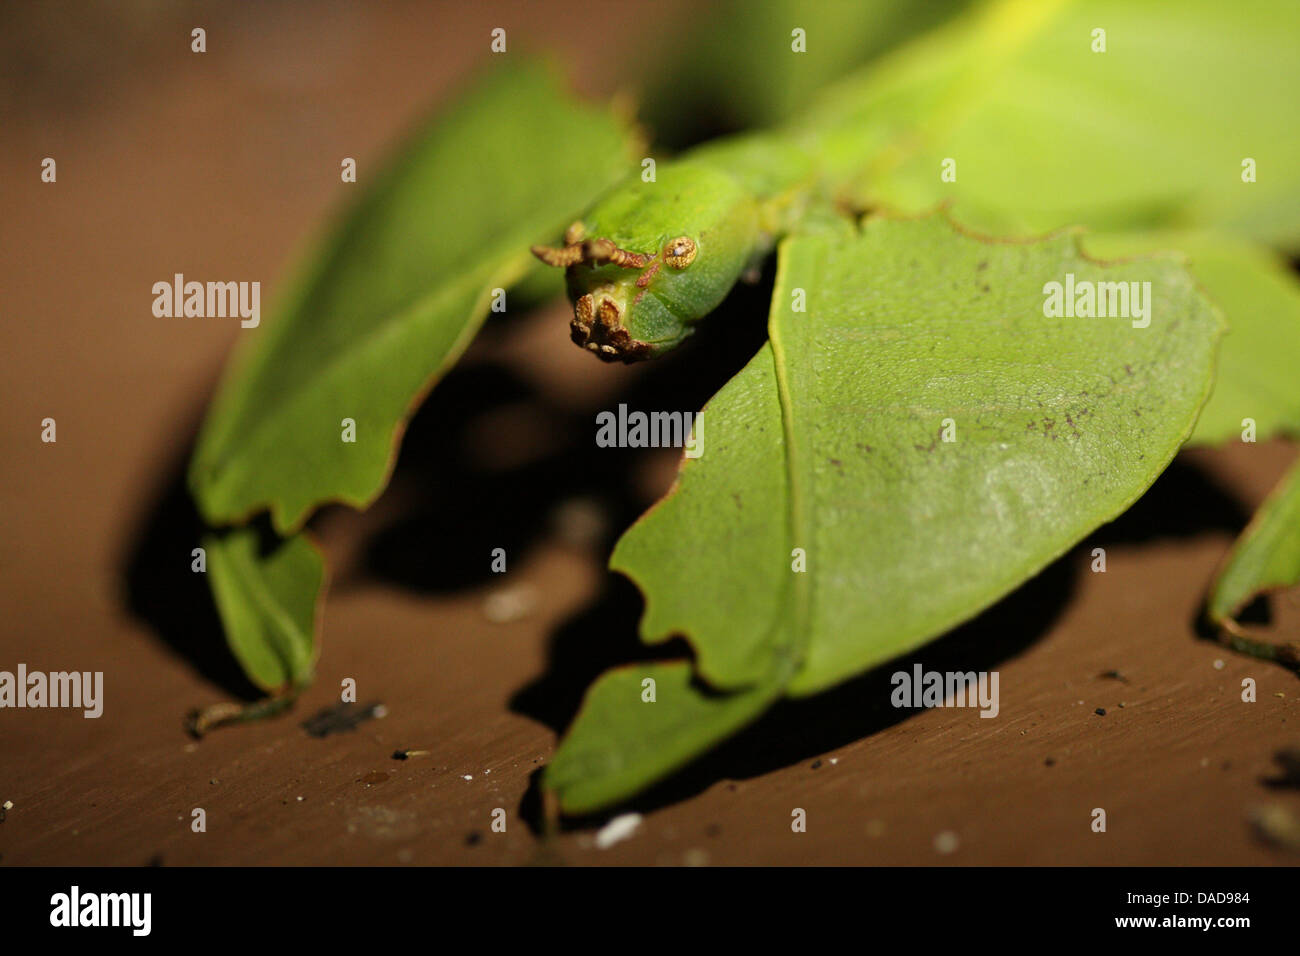 Javan Leaf-Insect, leaf insect (Phyllium bioculatum, Phyllium pulchrifolium), portrait, Malaysia, Sabah, Danum Valley Stock Photo